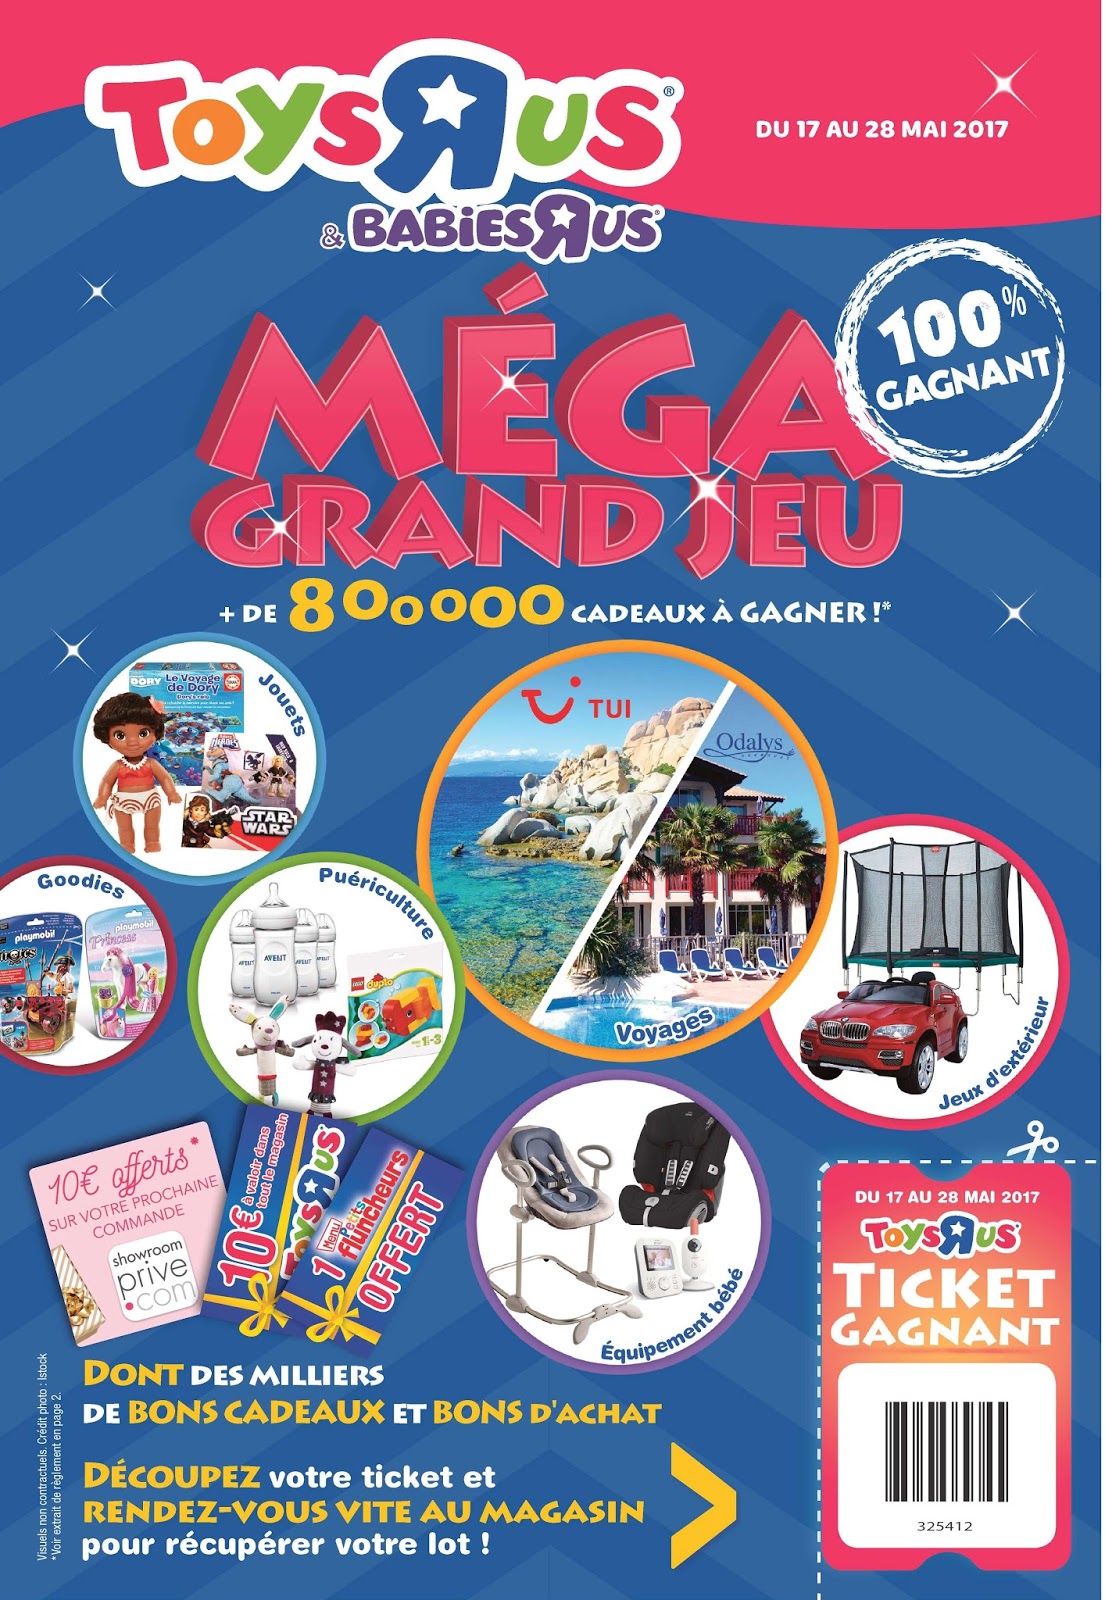 Mega Grand Jeu – 100% Gagnant plus de 800 000 cadeaux   gagner